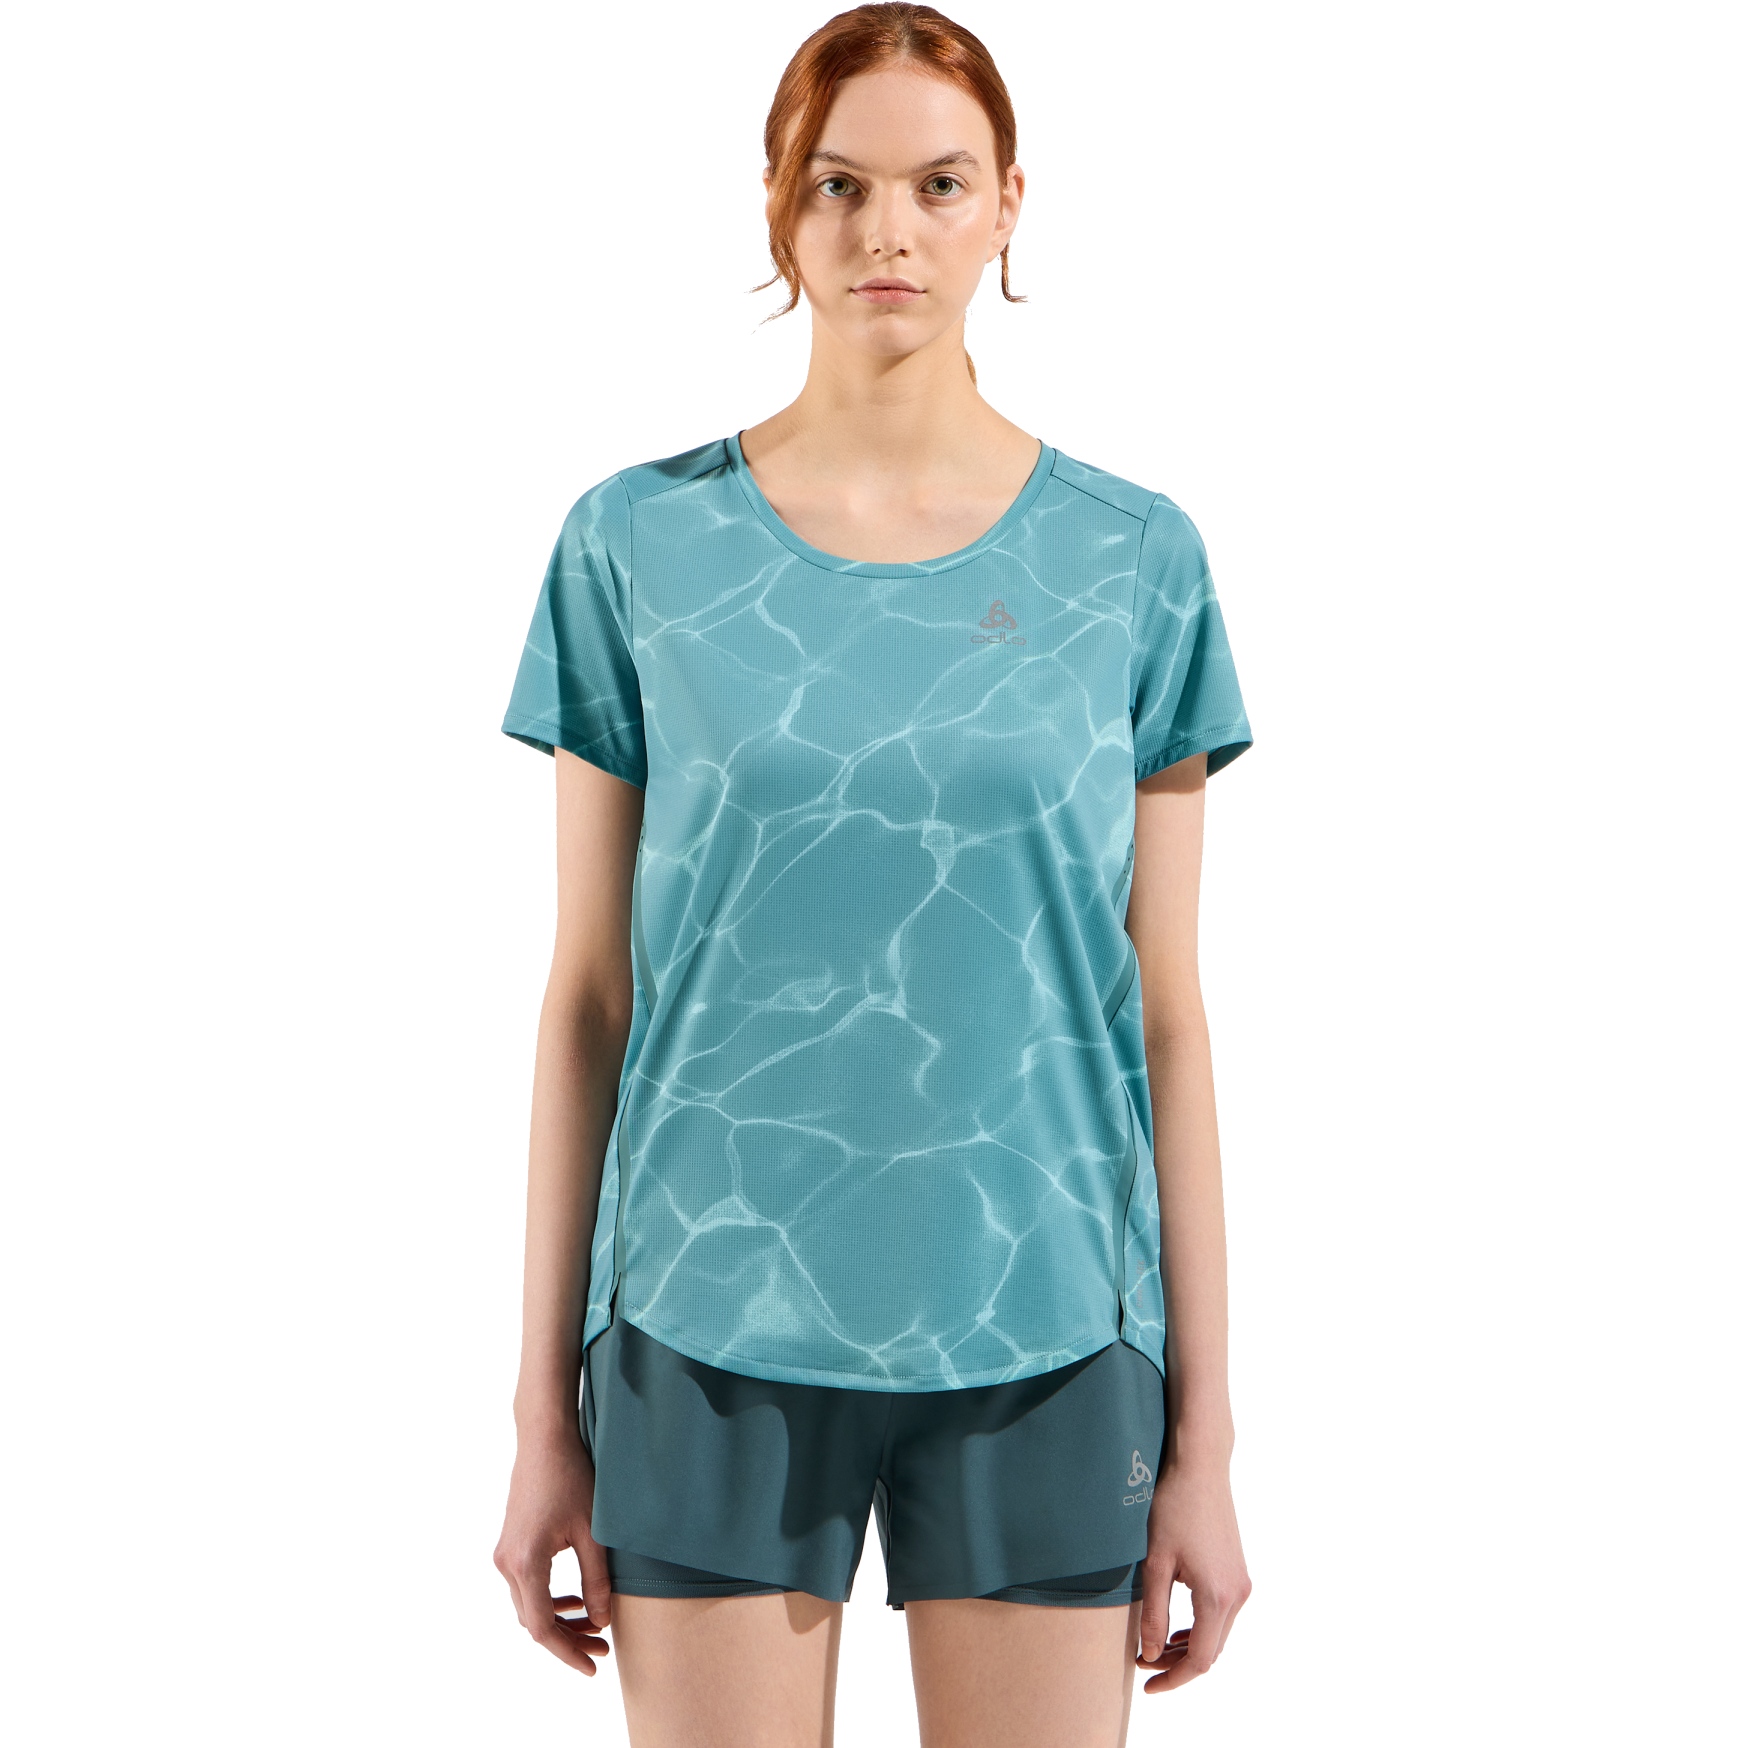 Produktbild von Odlo Zeroweight Chill-Tec Laufshirt mit Print Damen - arctic